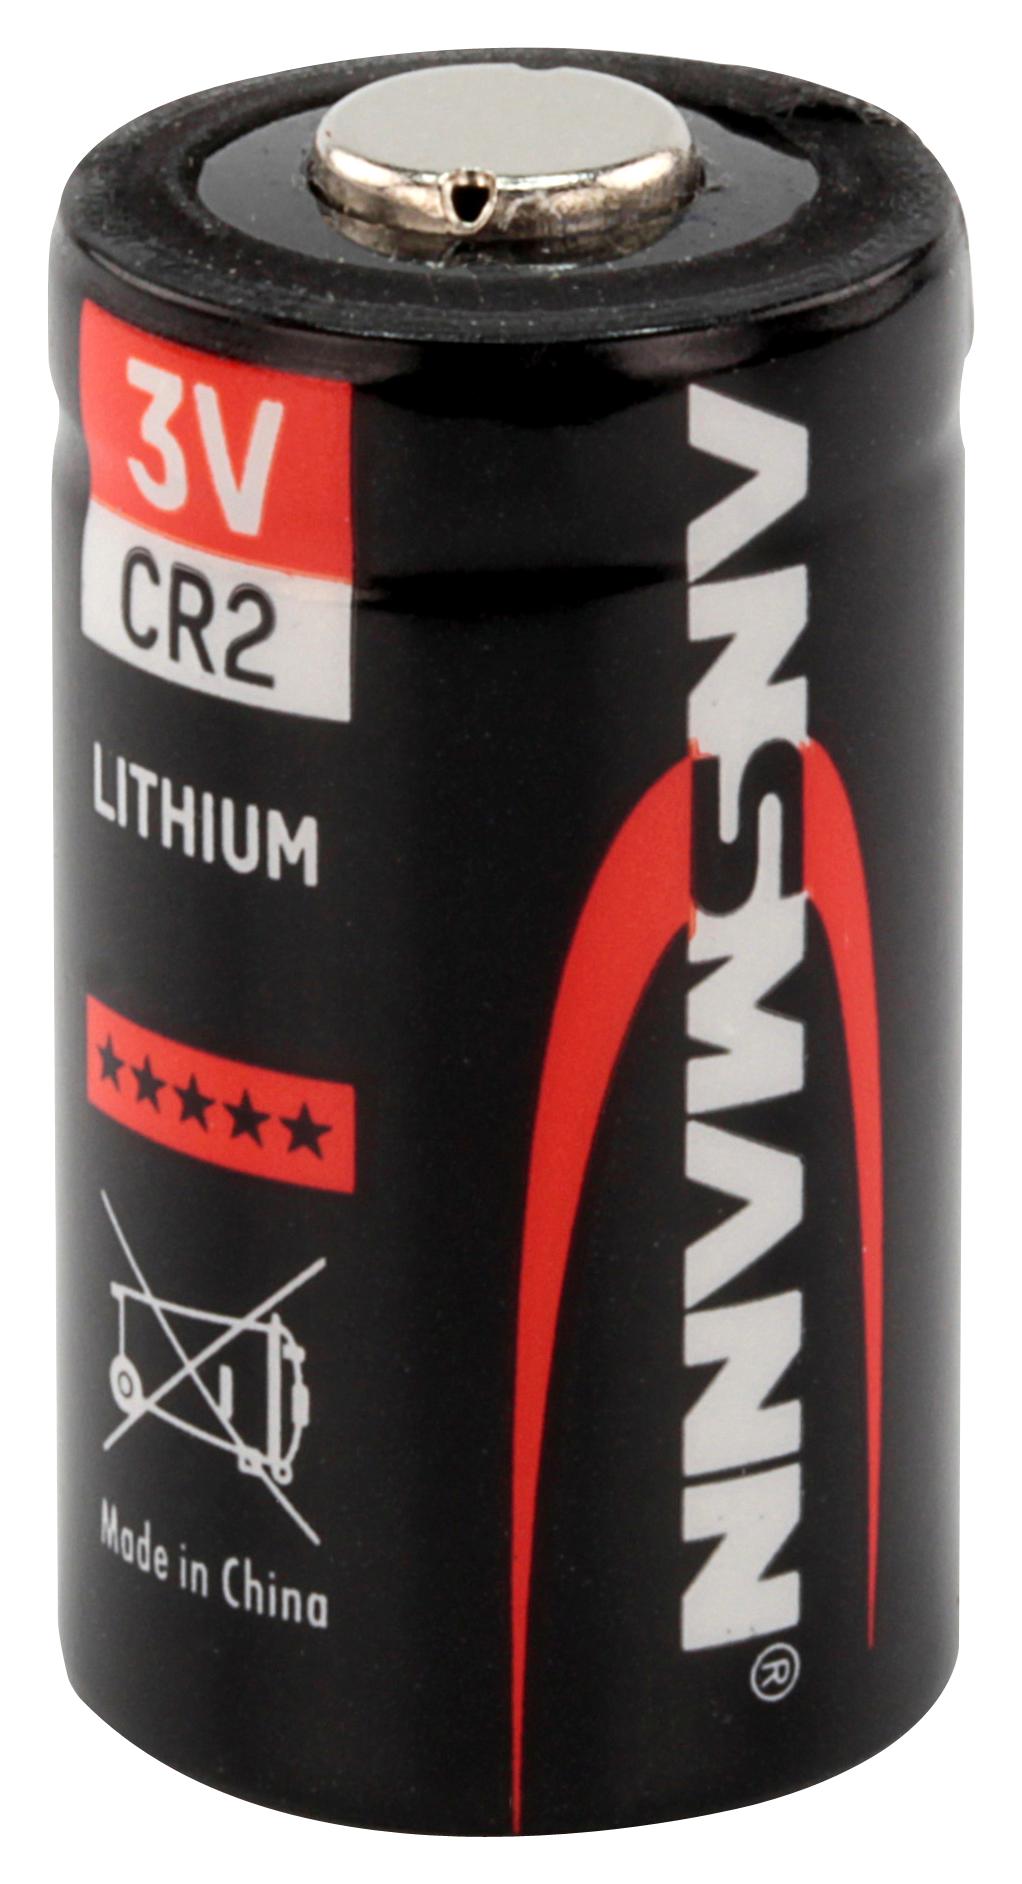 Ansmann 5020022 Battery, Lithium, Cr2, 3V